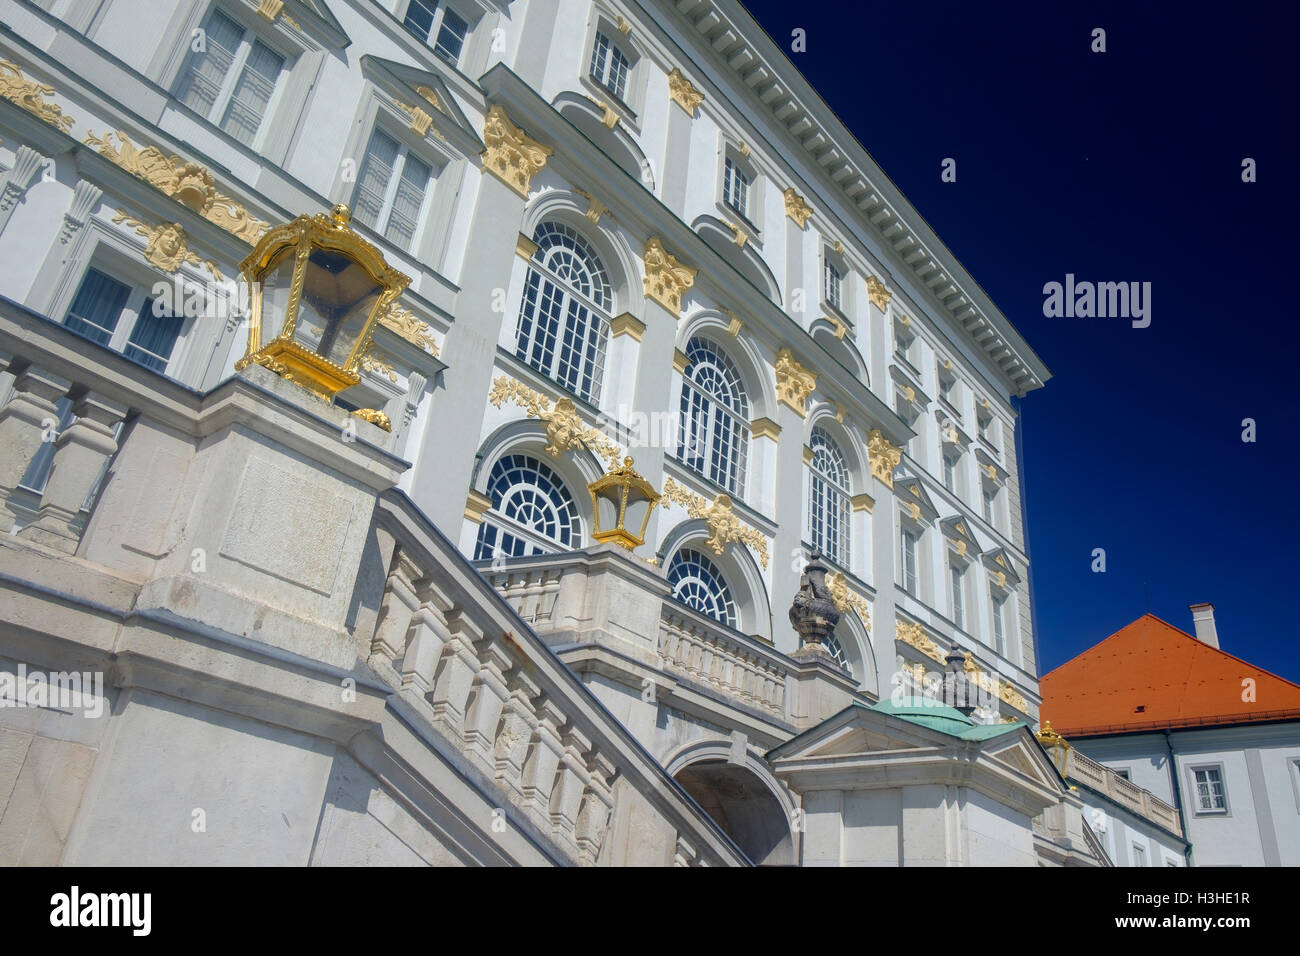 Nymphenburg Palace Munich Germany Stock Photo